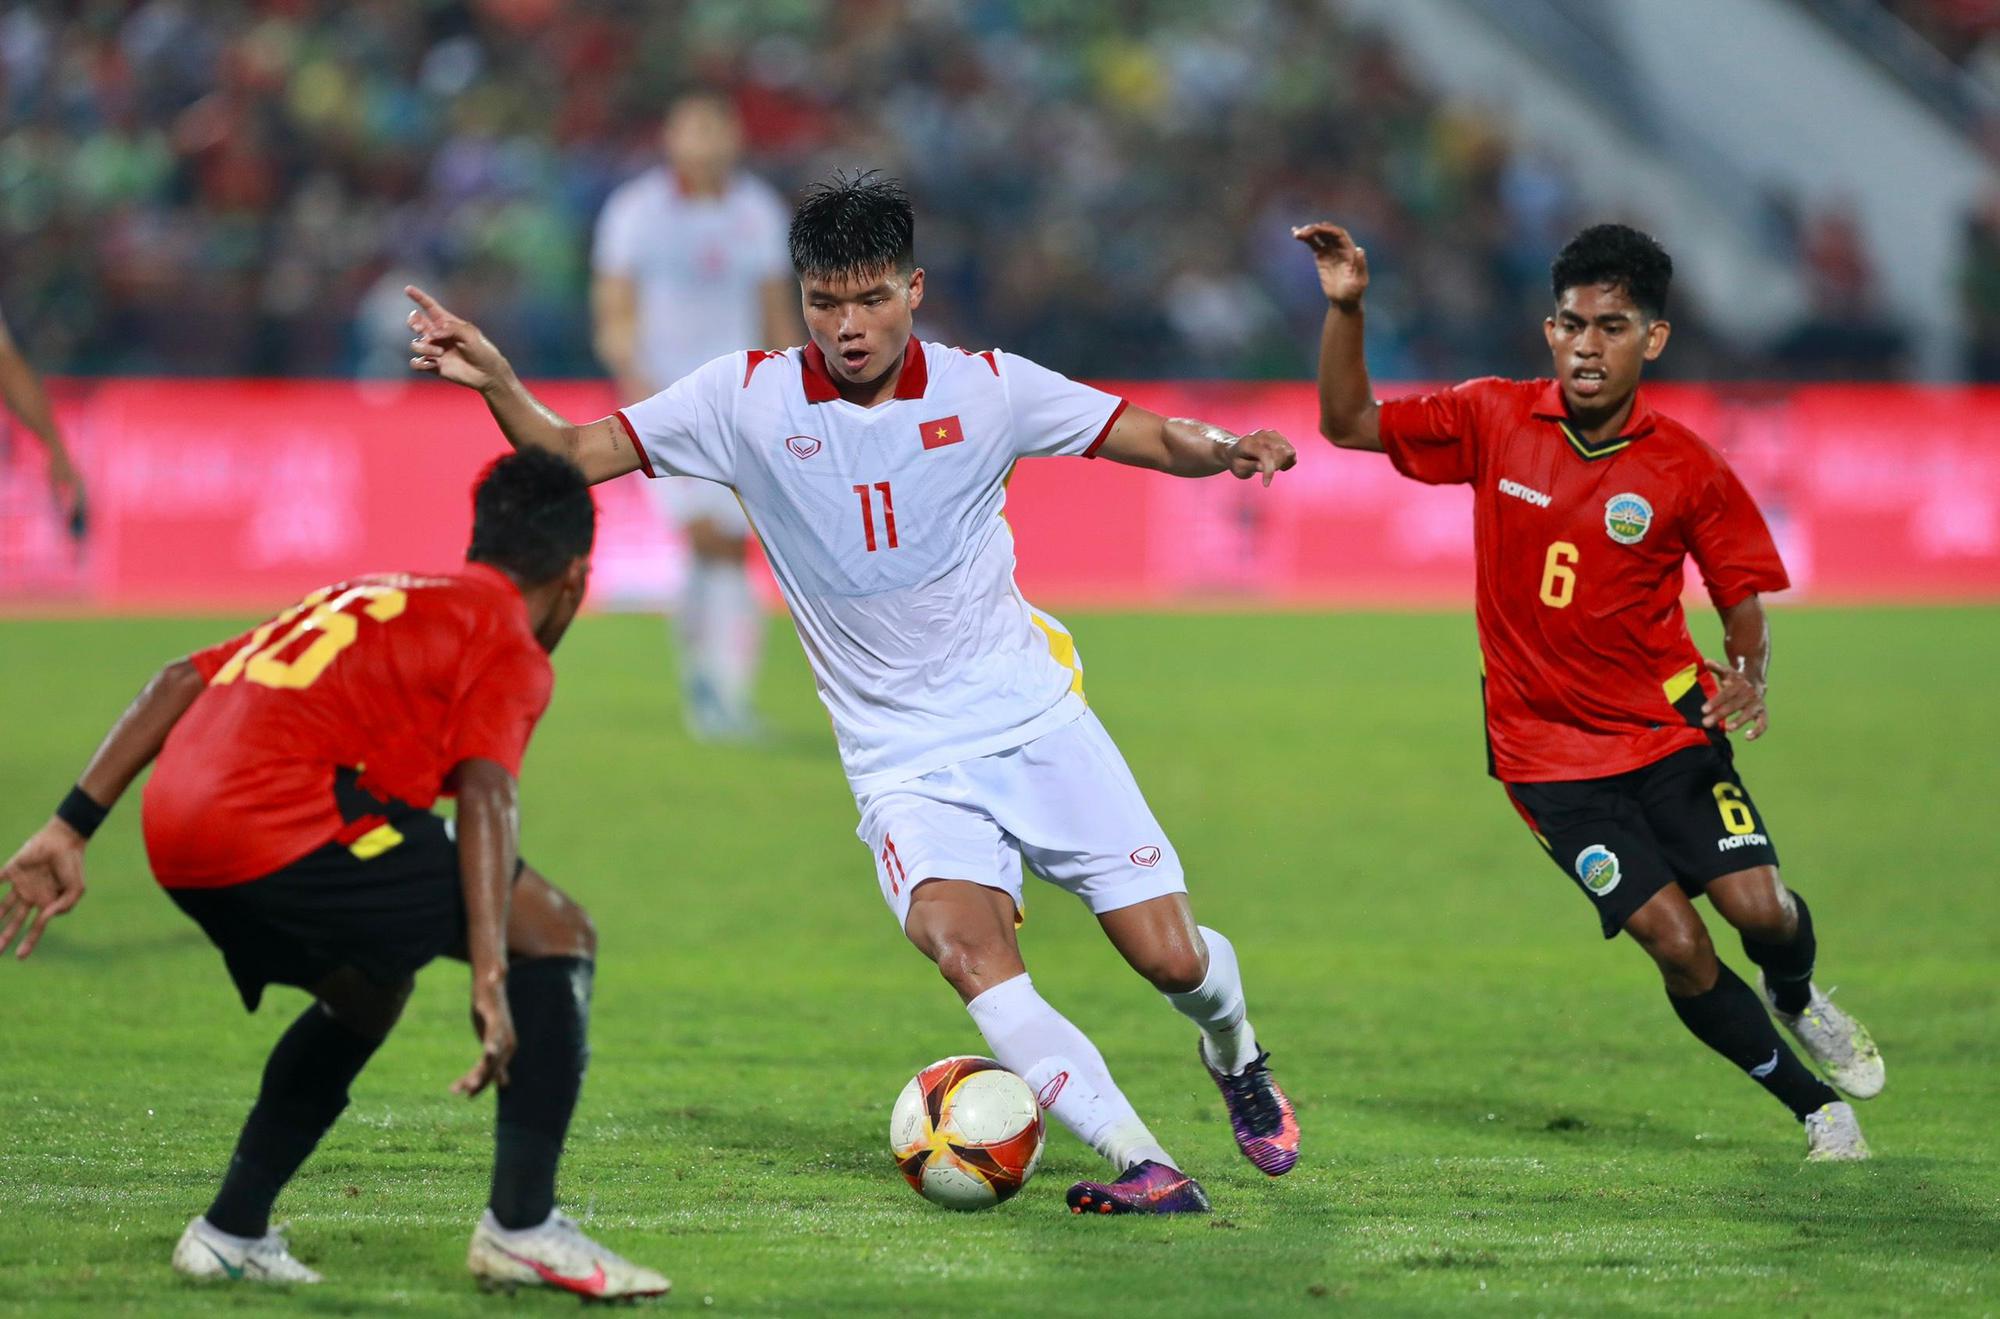 Đội hình xuất phát U23 Việt Nam đấu U23 Thái Lan: HLV Park Hang-seo phát lệnh tấn công! - Ảnh 1.